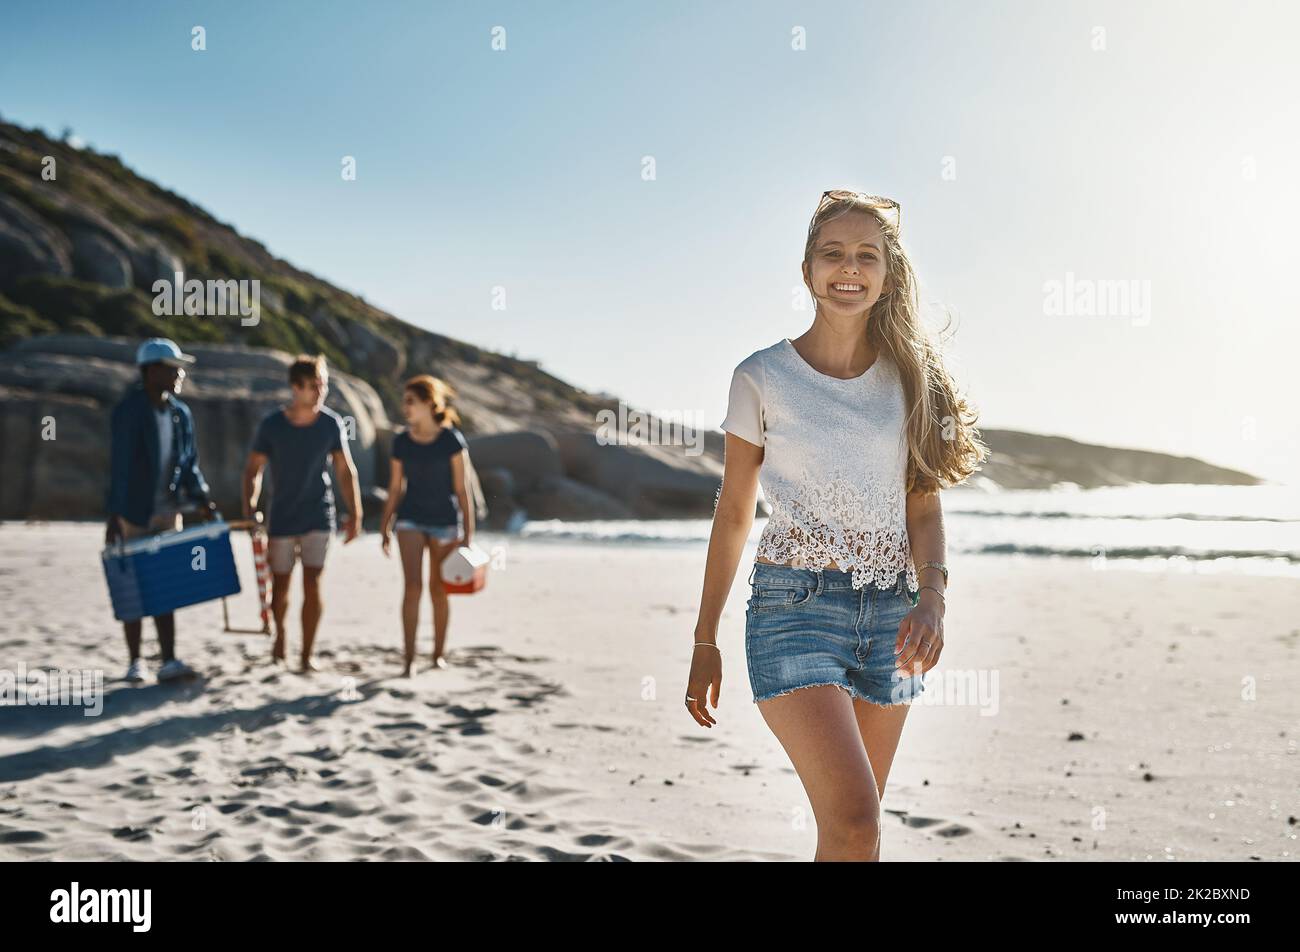 Im solo felice di essere con i miei amici. Ritratto di una giovane donna felice che cammina sulla spiaggia con i suoi amici in una giornata di sole. Foto Stock